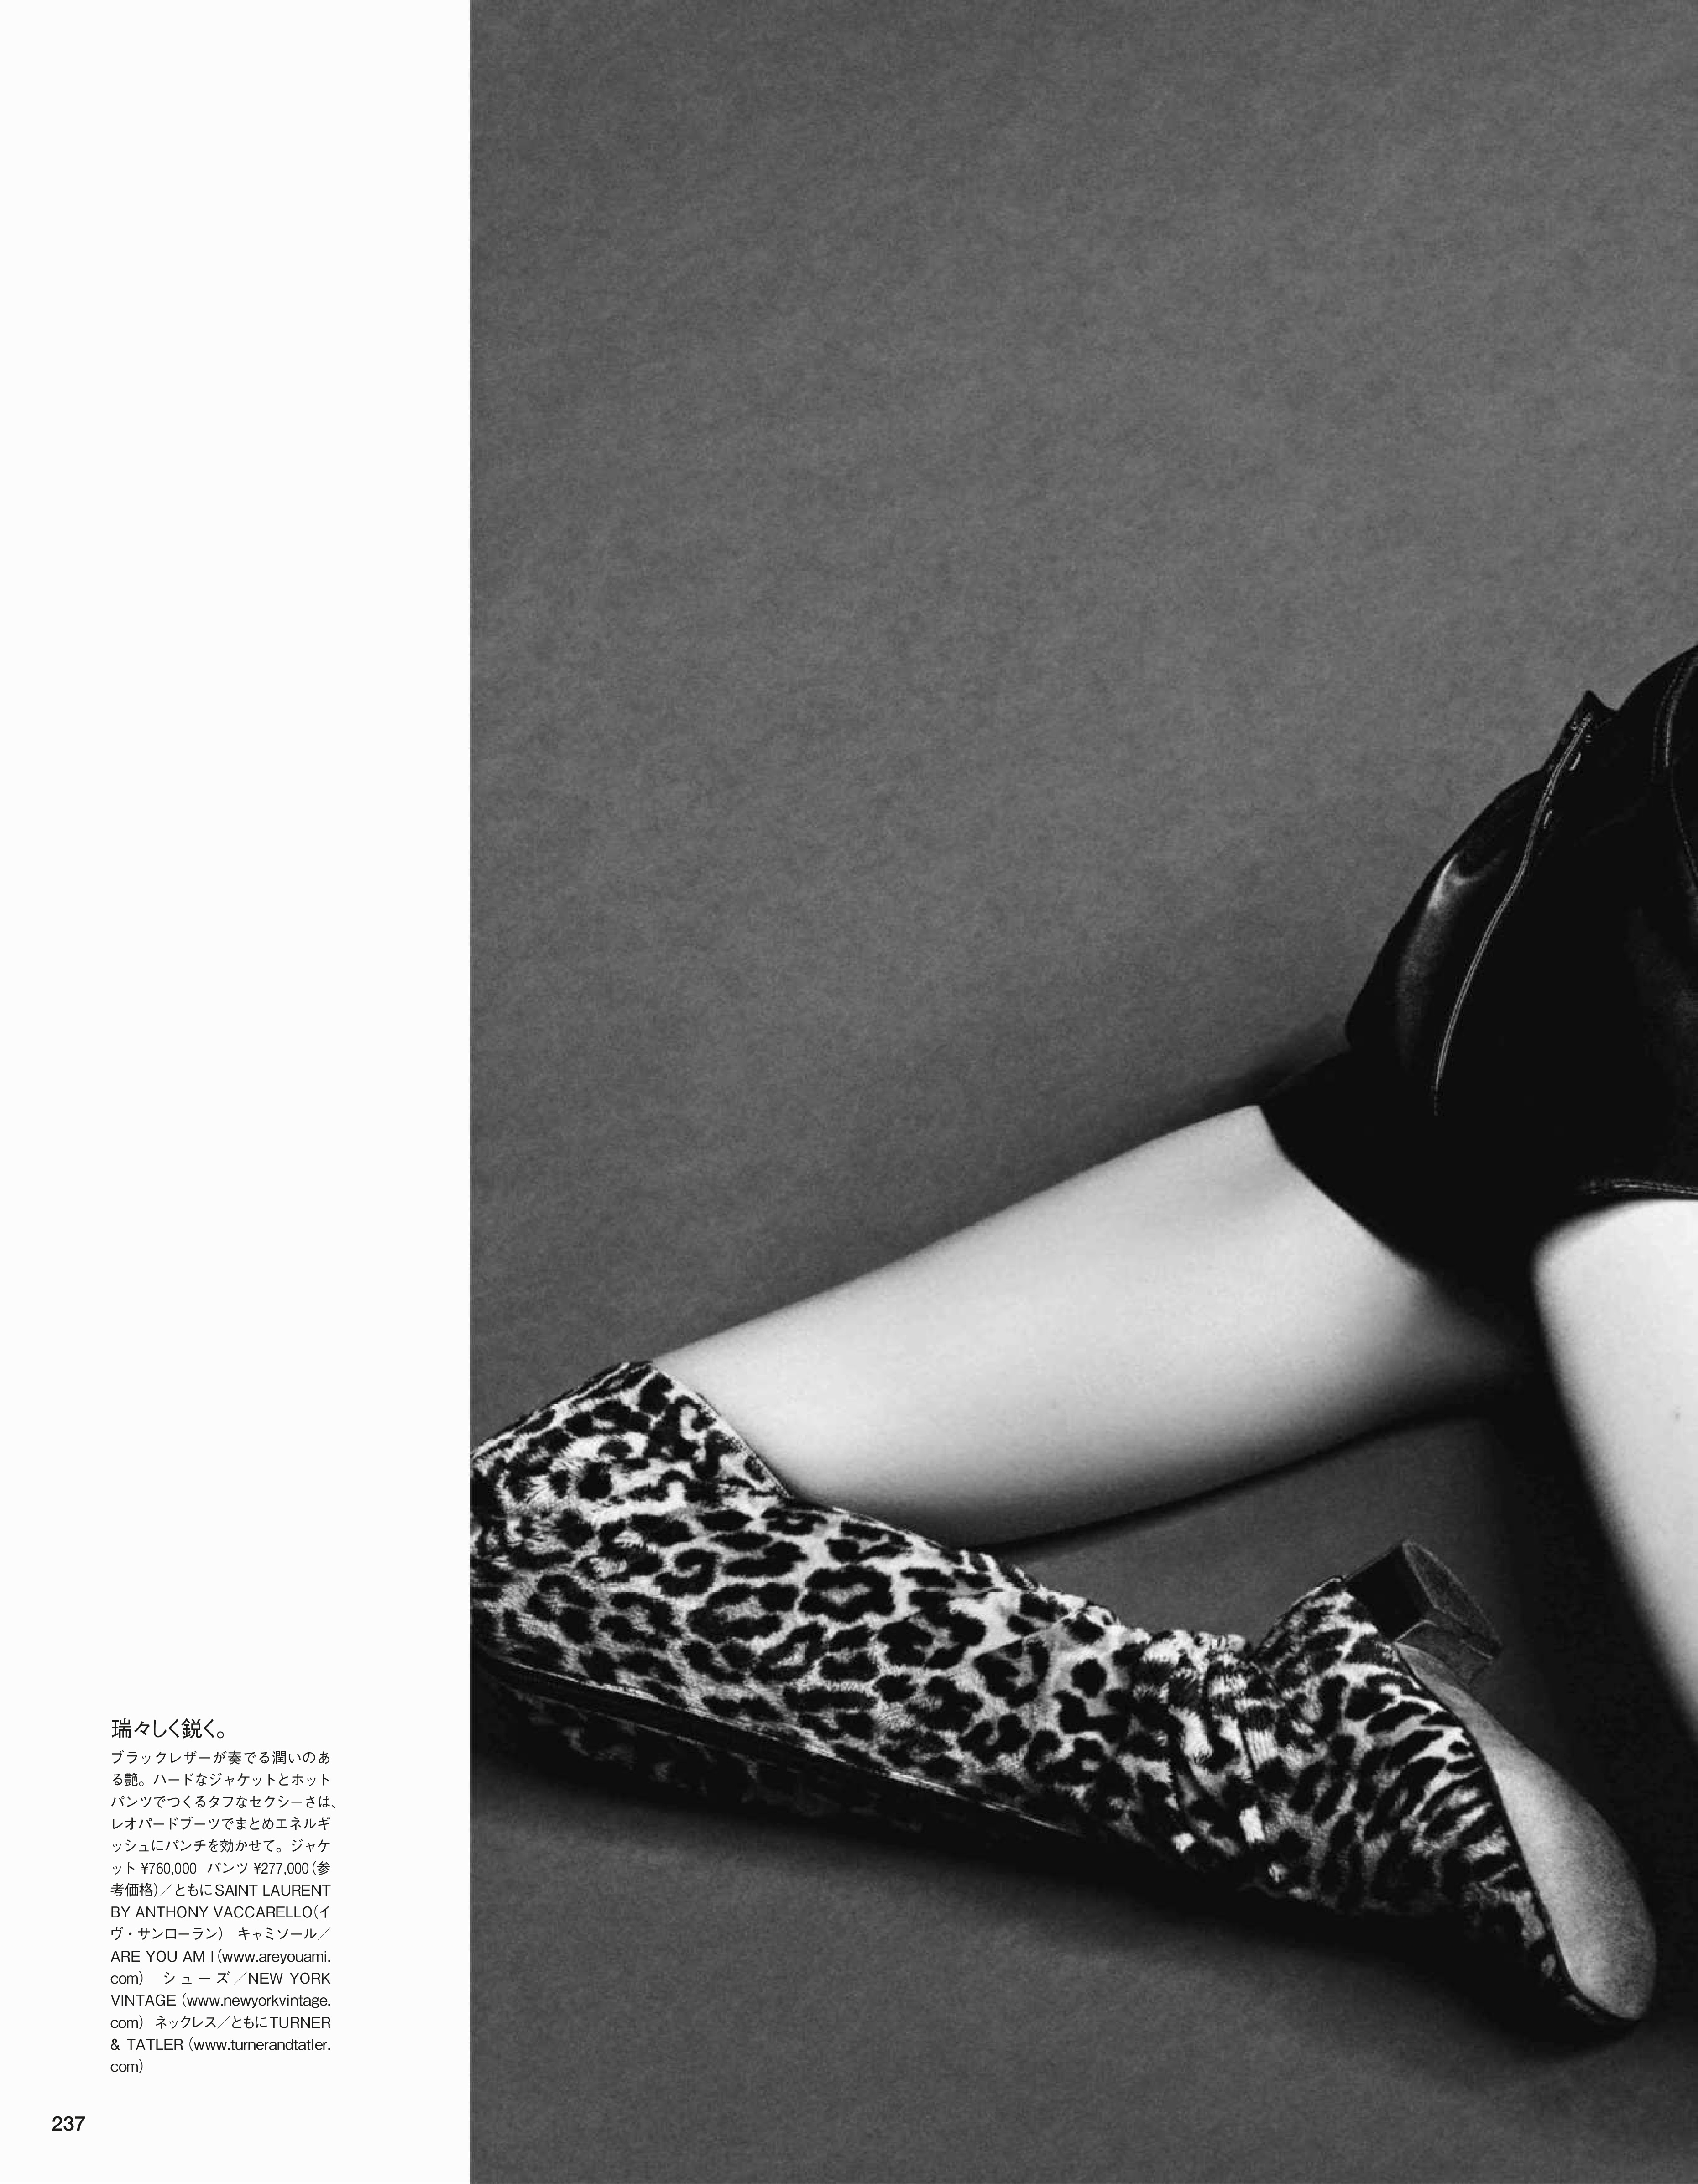 Kaia Gerber for Vogue Japan 2018 -24 | GotCeleb